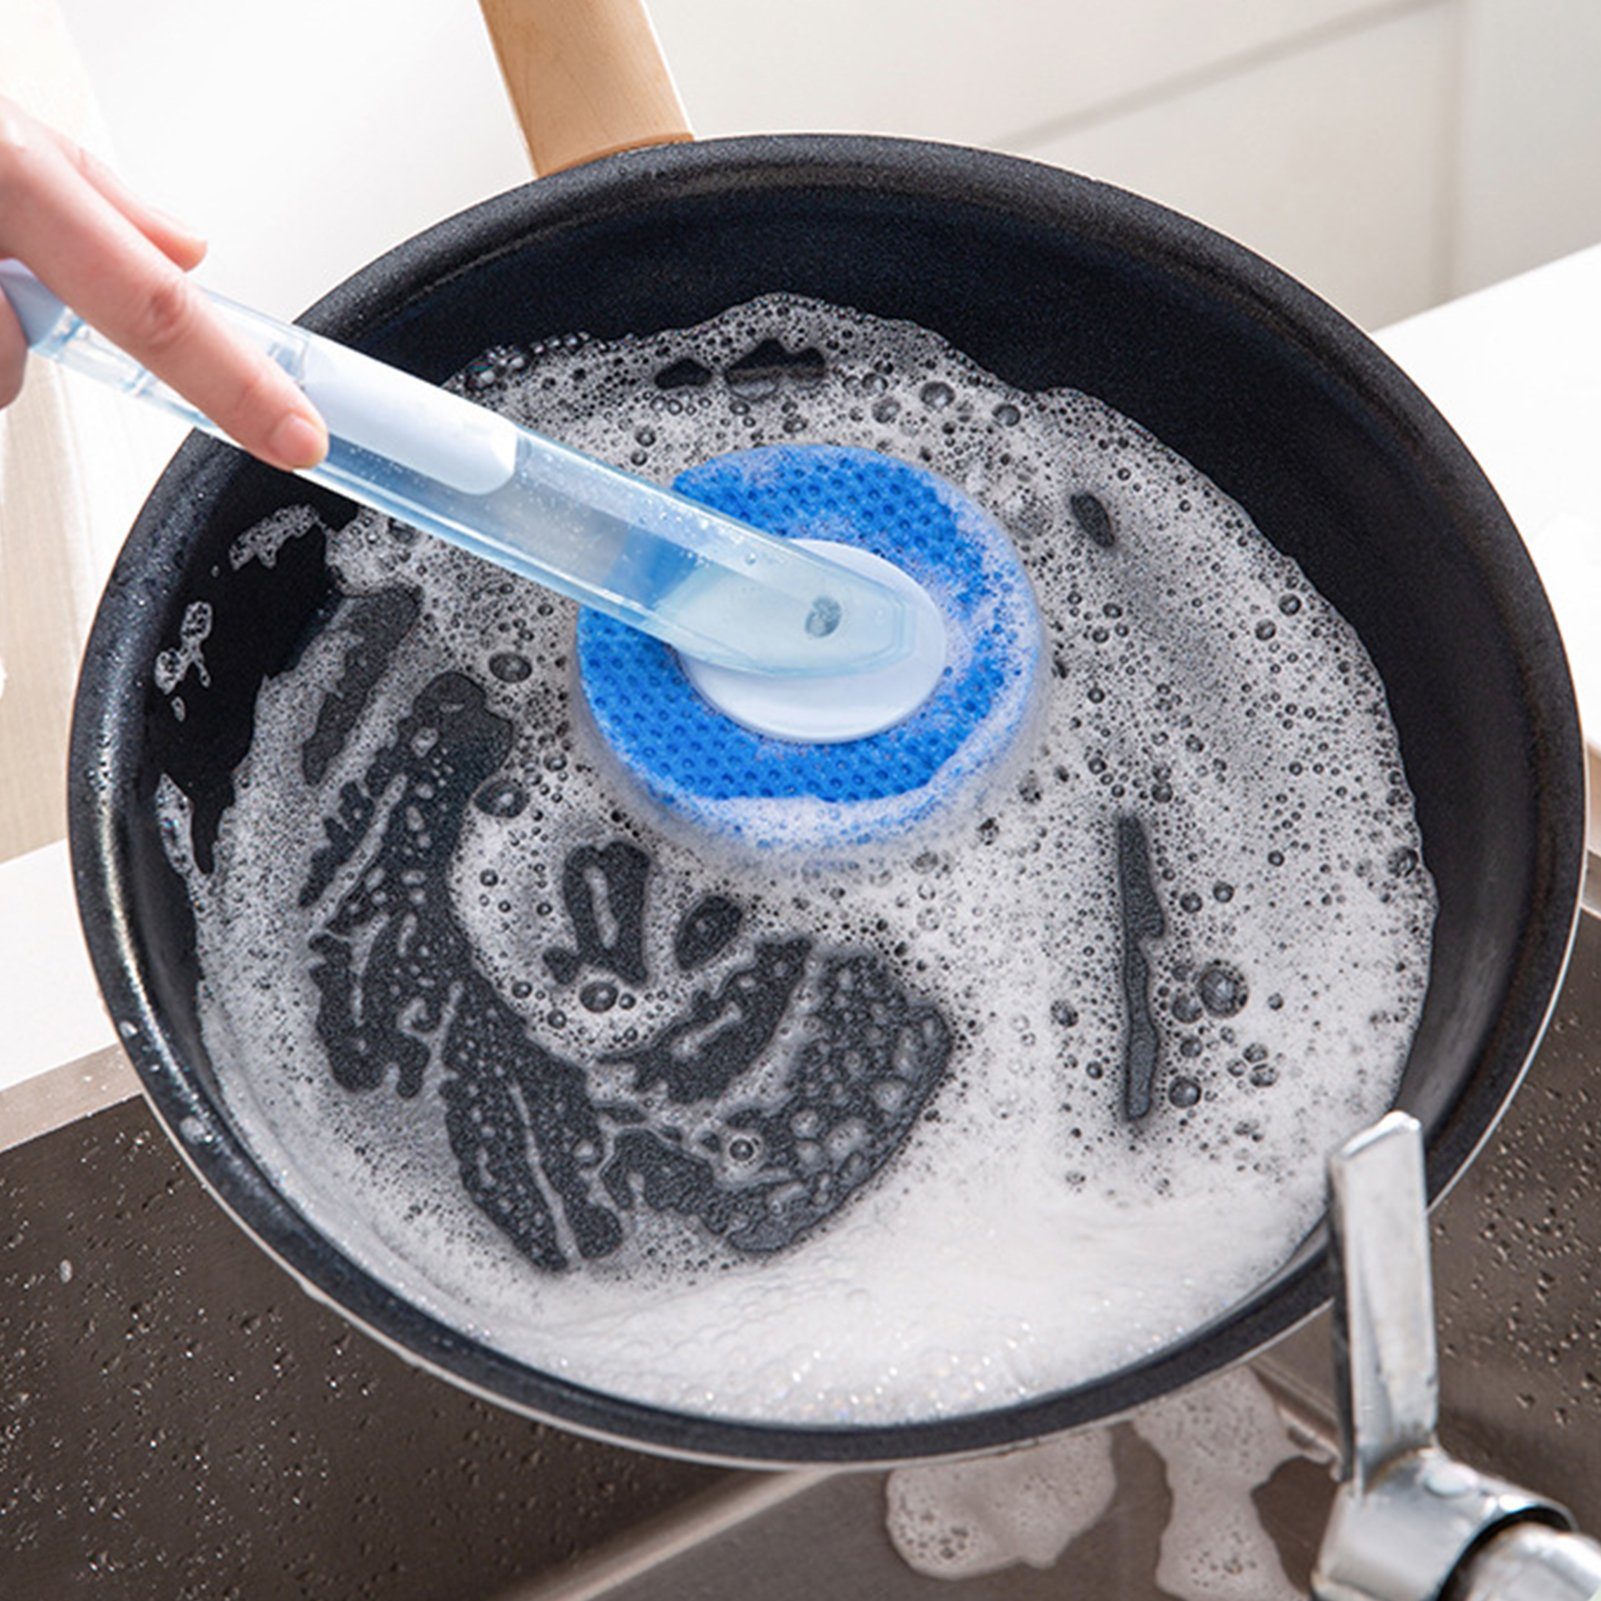 Spülmittelspender Reinigungsbürste mit Reinigungsbürste/Spülbürste Popubear Blau